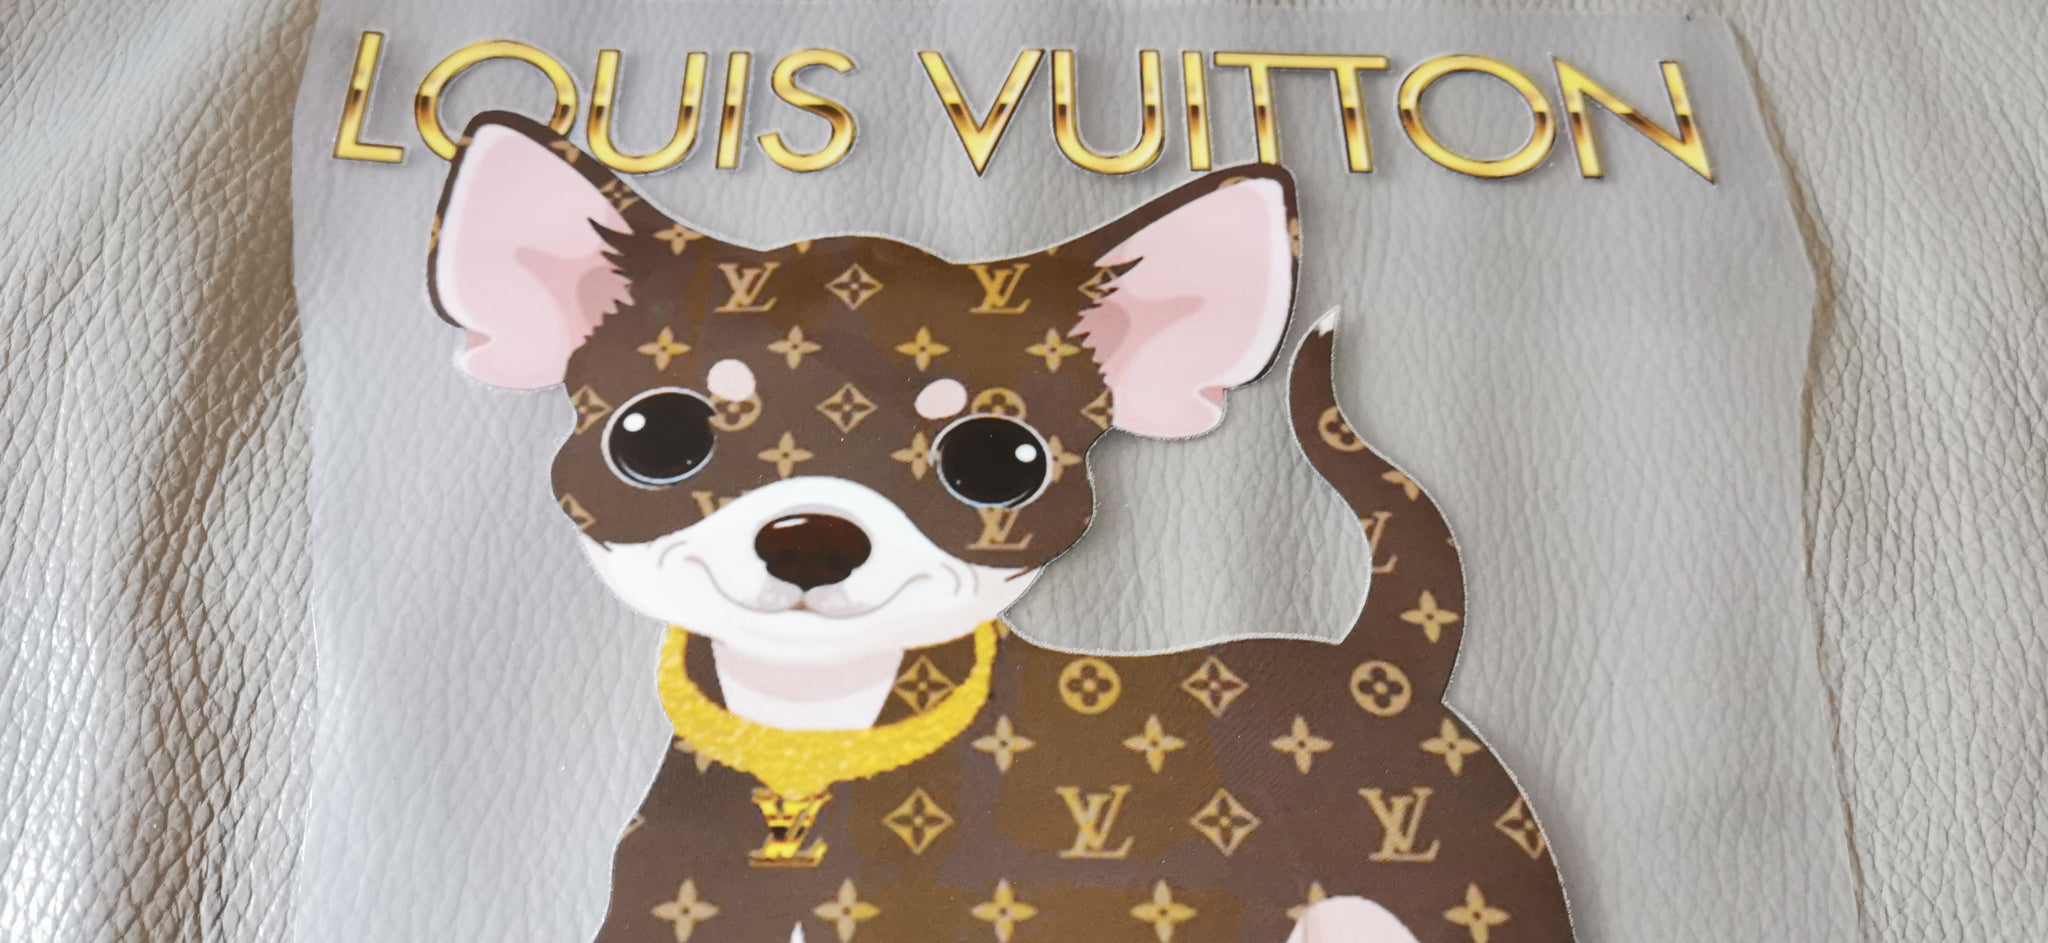 LV custom dog clothes  louis vuitton dog clothes